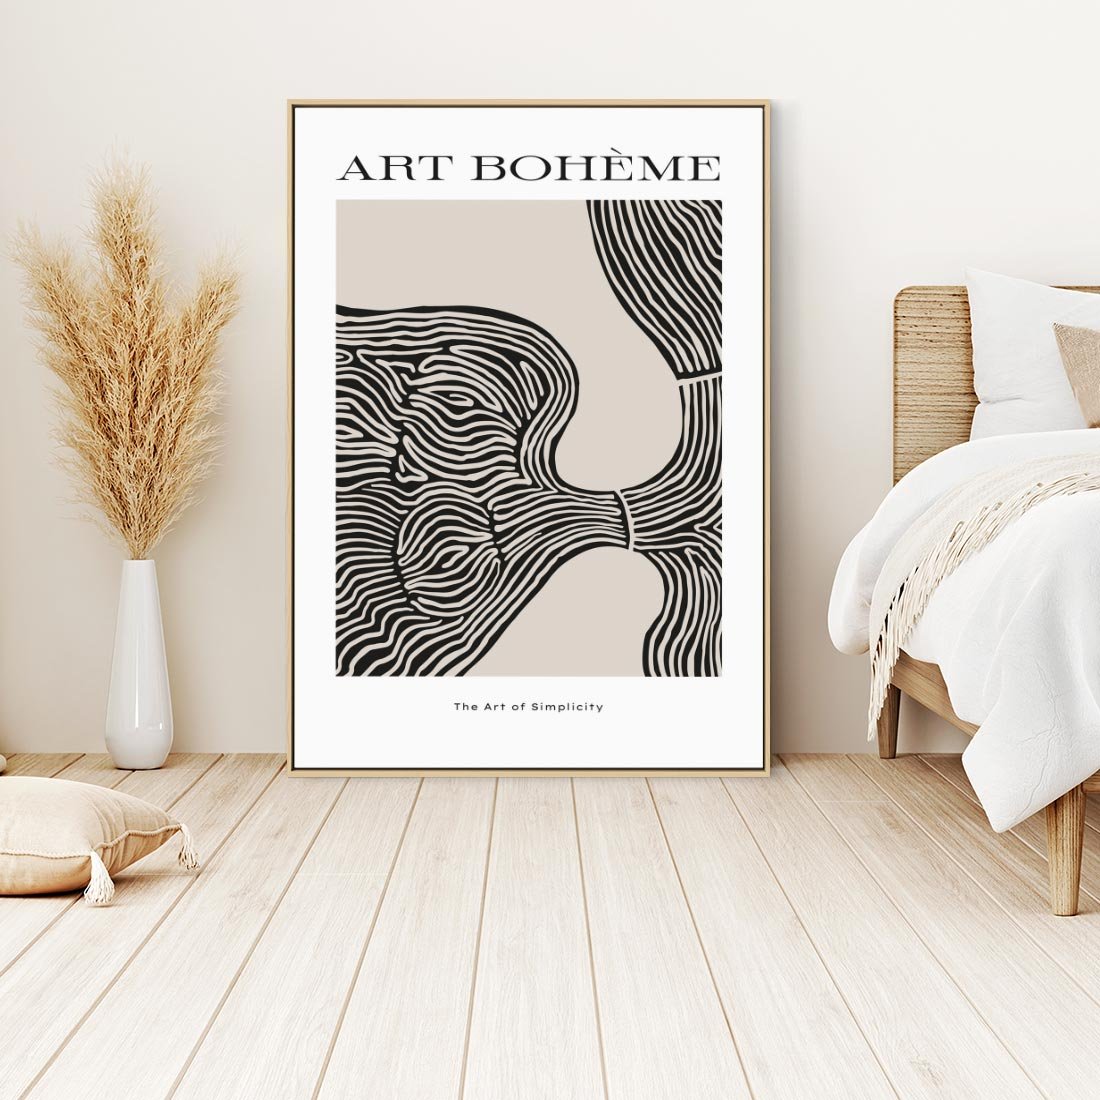 Obraz w ramie 50x70 - Wewnętrzne Zagadki Kształtów - sztuka minimalizmu, biało czarna rycina - rama drewno